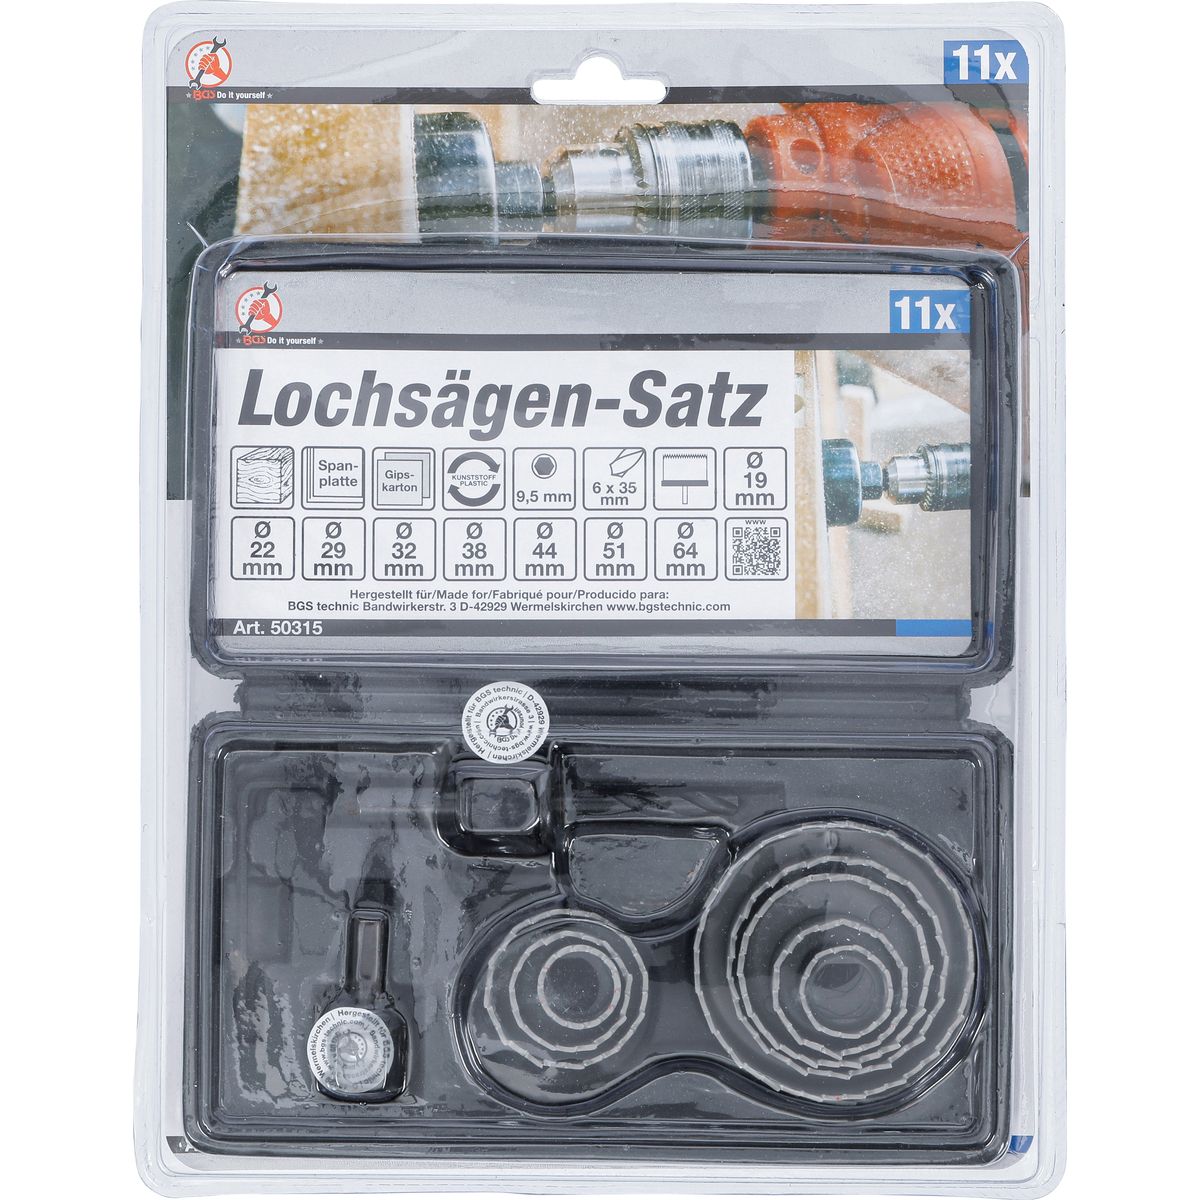 Lochsägen-Satz | Ø 19 - 64 mm | Tiefe 24 mm | 11-tlg.